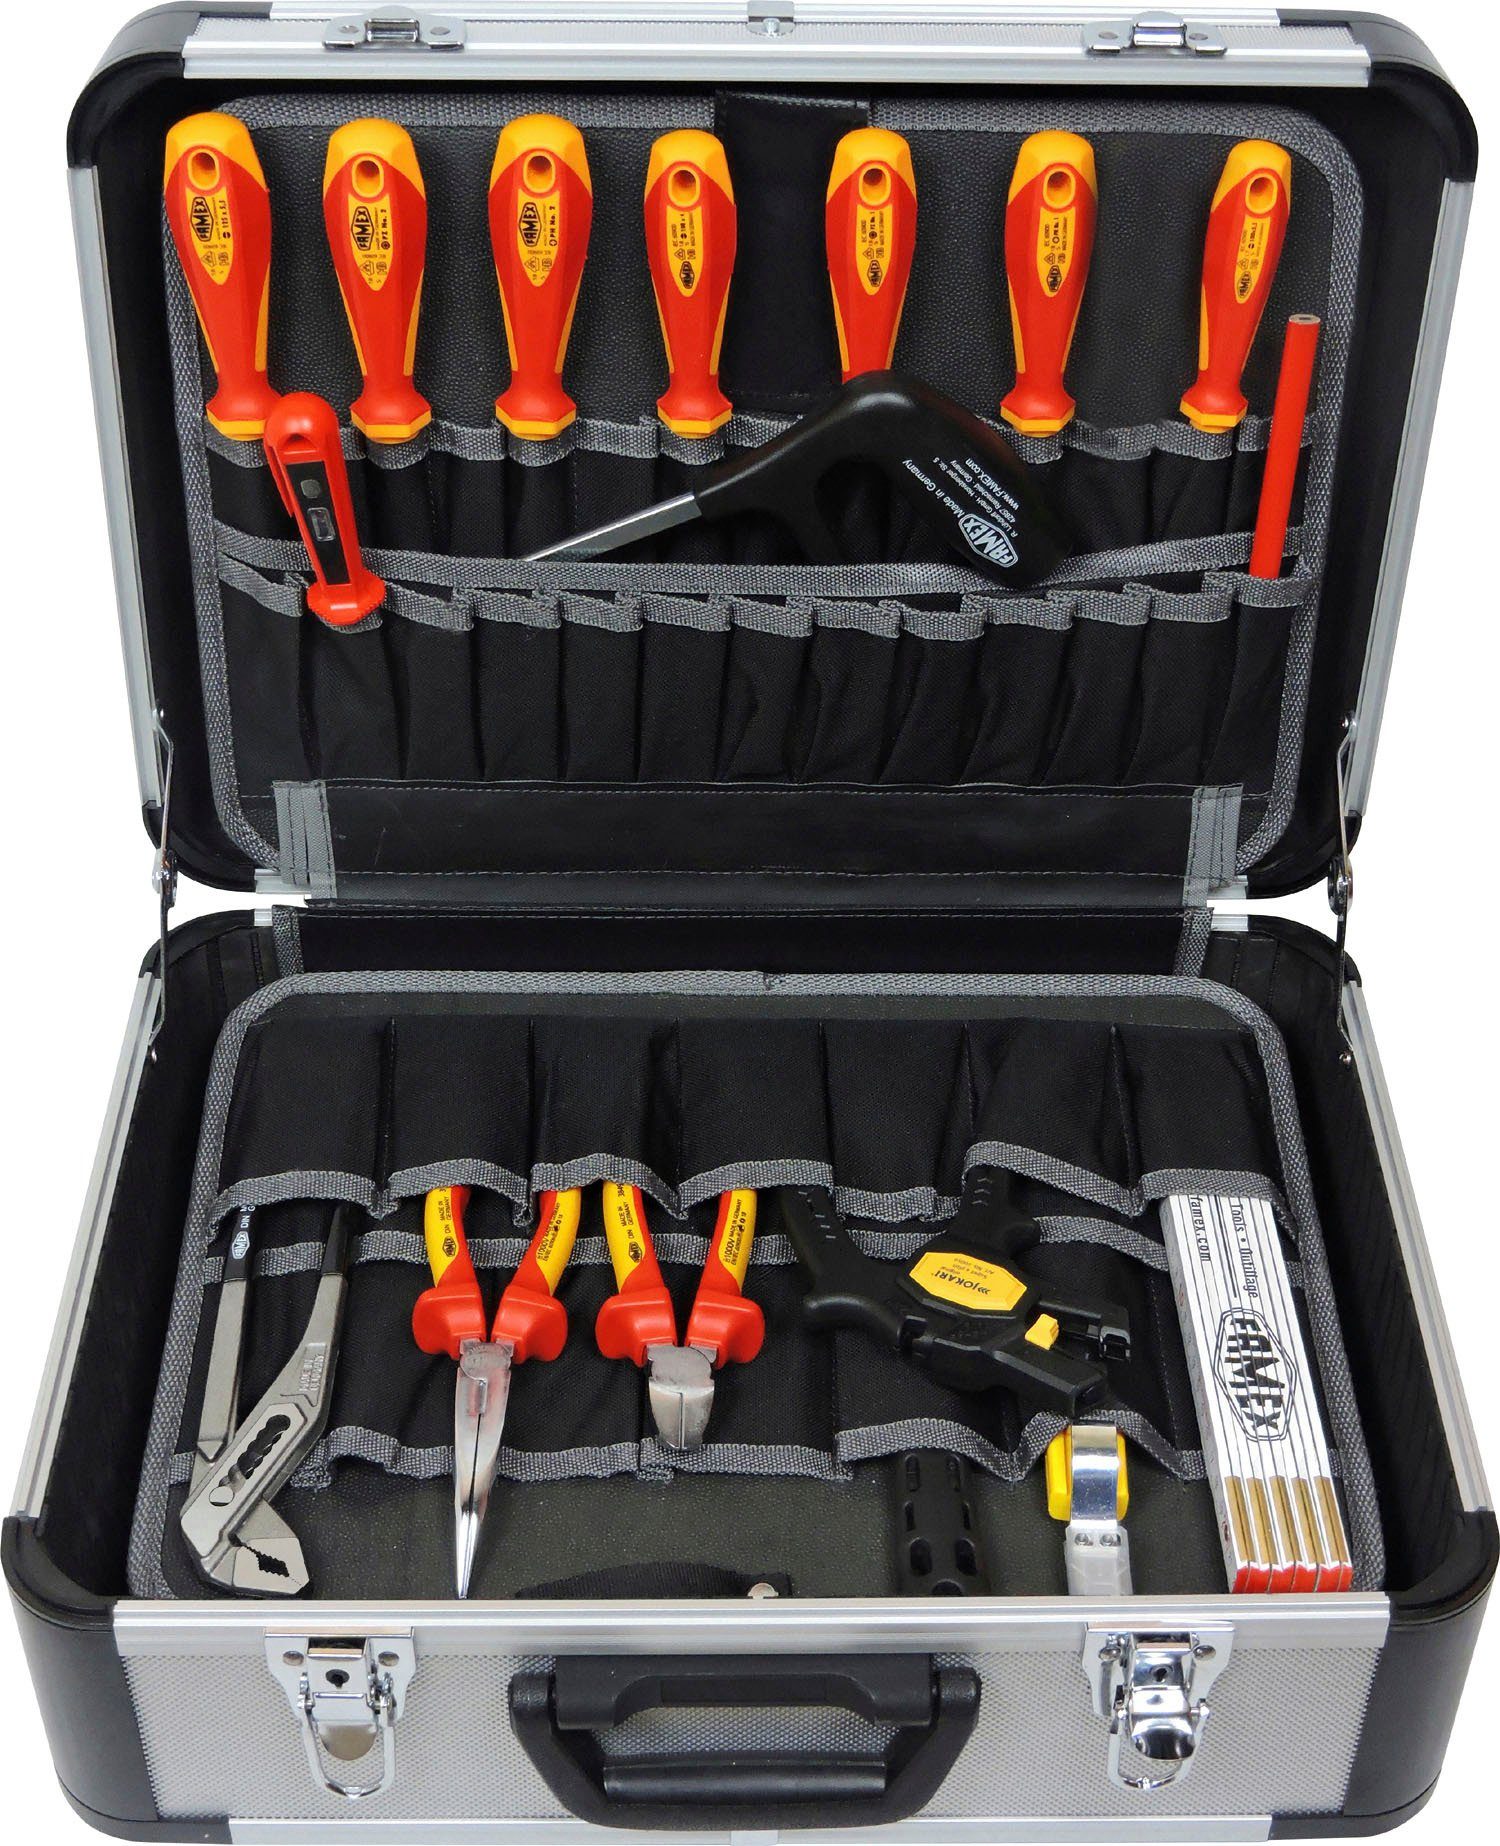 478-10, Elektriker für Werkzeugset den FAMEX Werkzeugkoffer 31-tlg.,